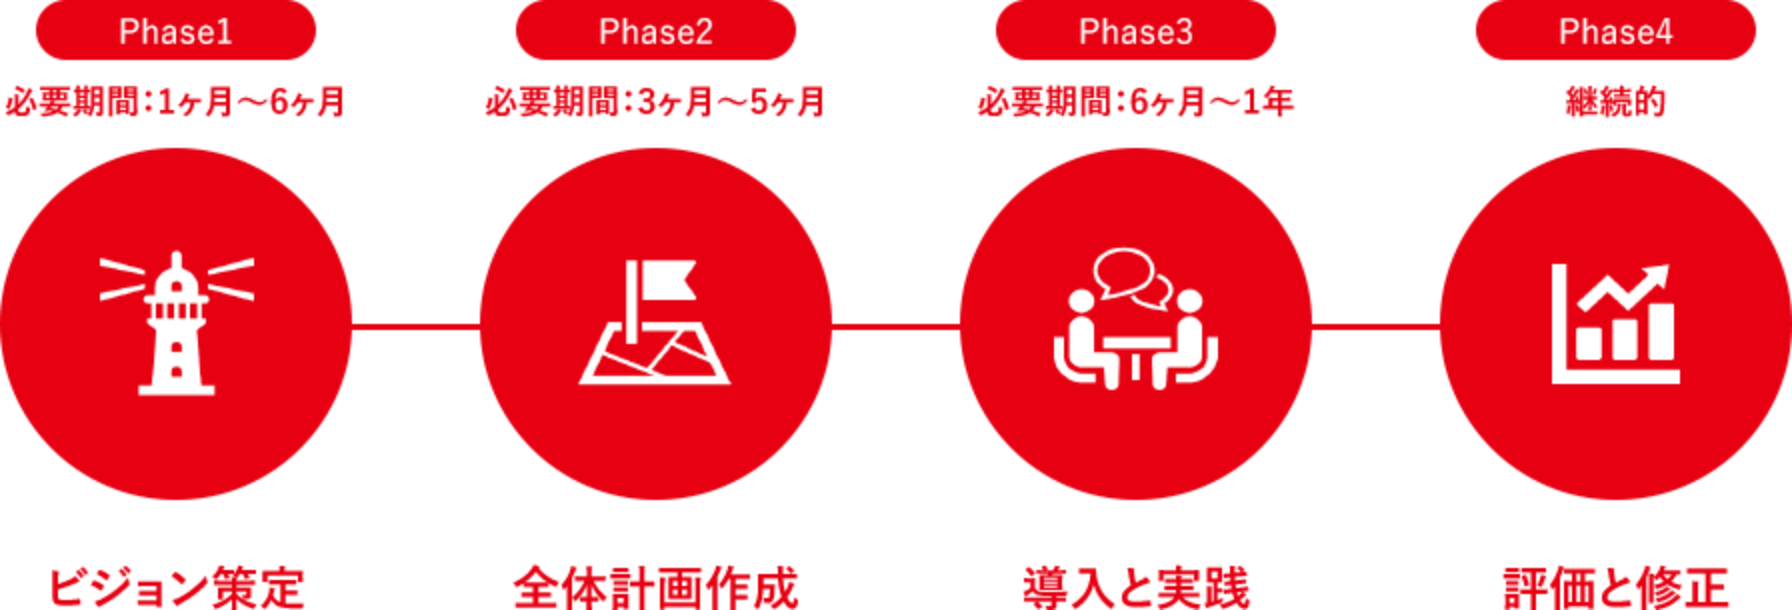 導入ステップ：Phase1ビジョン策定、Phase2全体計画作成、Phase3導入と実践、Phase4評価と修正